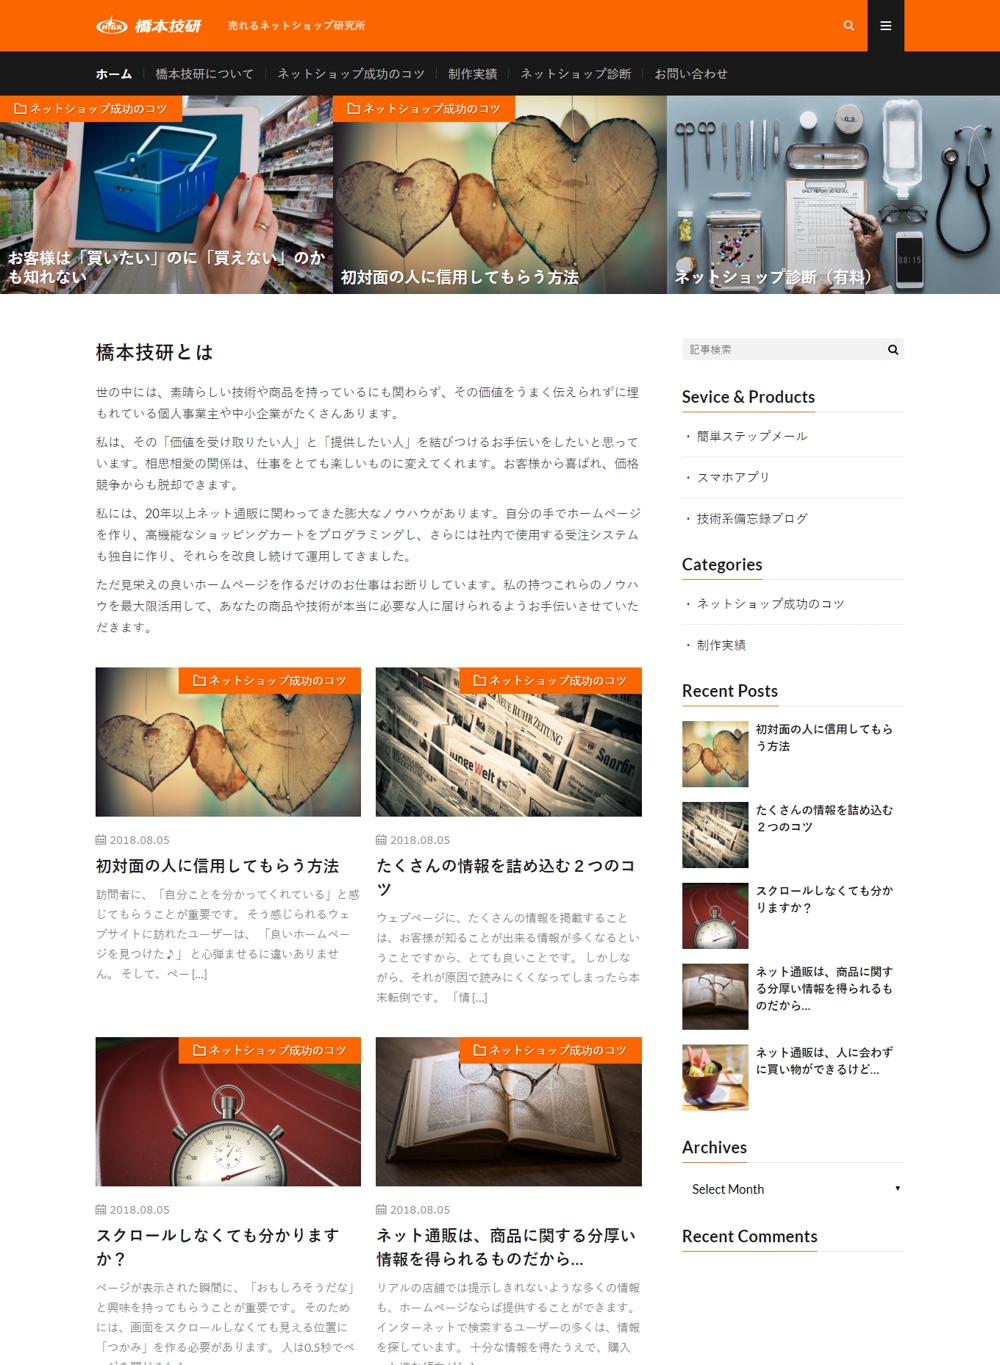 橋本隆のホームページです